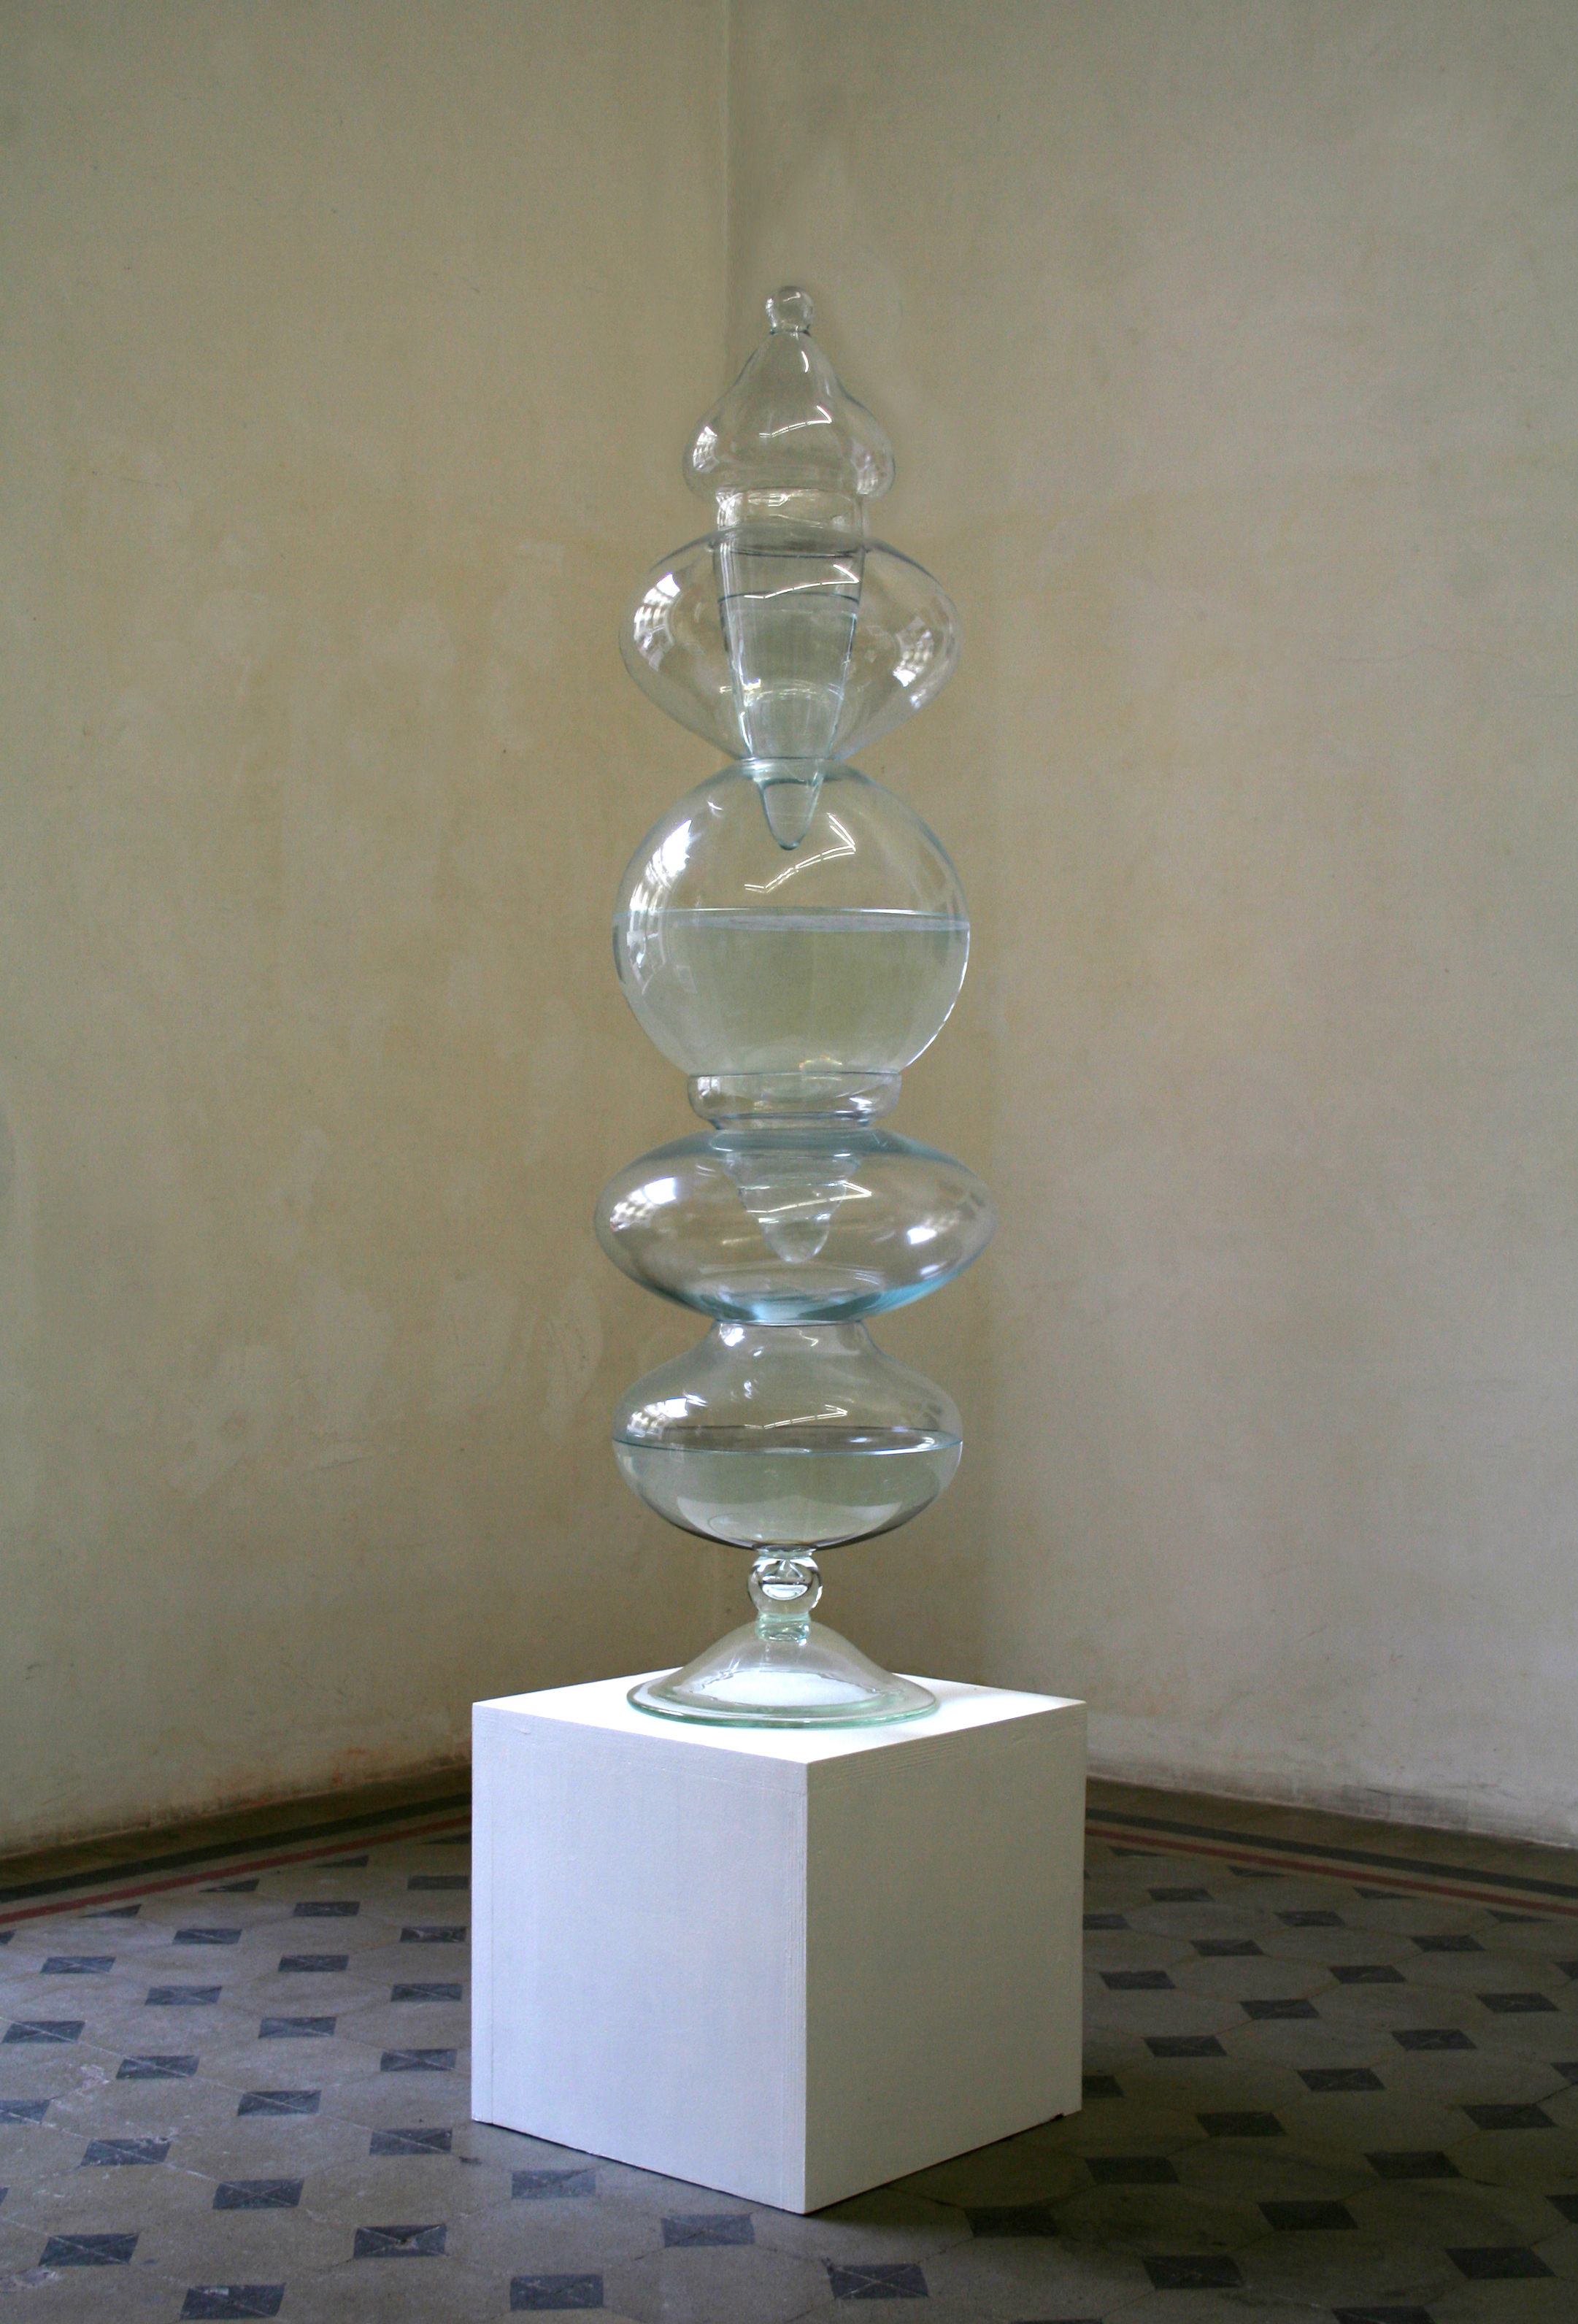 Sabine Delafon, ⠨⠝⠨⠁⠨⠍ ⠨⠍⠨⠽⠨⠕ ⠨⠓⠨⠕ ⠨⠗⠨⠑⠨⠝⠨⠛⠨⠓⠨⠑ ⠨⠅⠨⠽⠨⠕, 2013. Vetro, 140 x 42 cm. 7 elementi peso circa 25 kg.Dalla serie "Be Careful!".